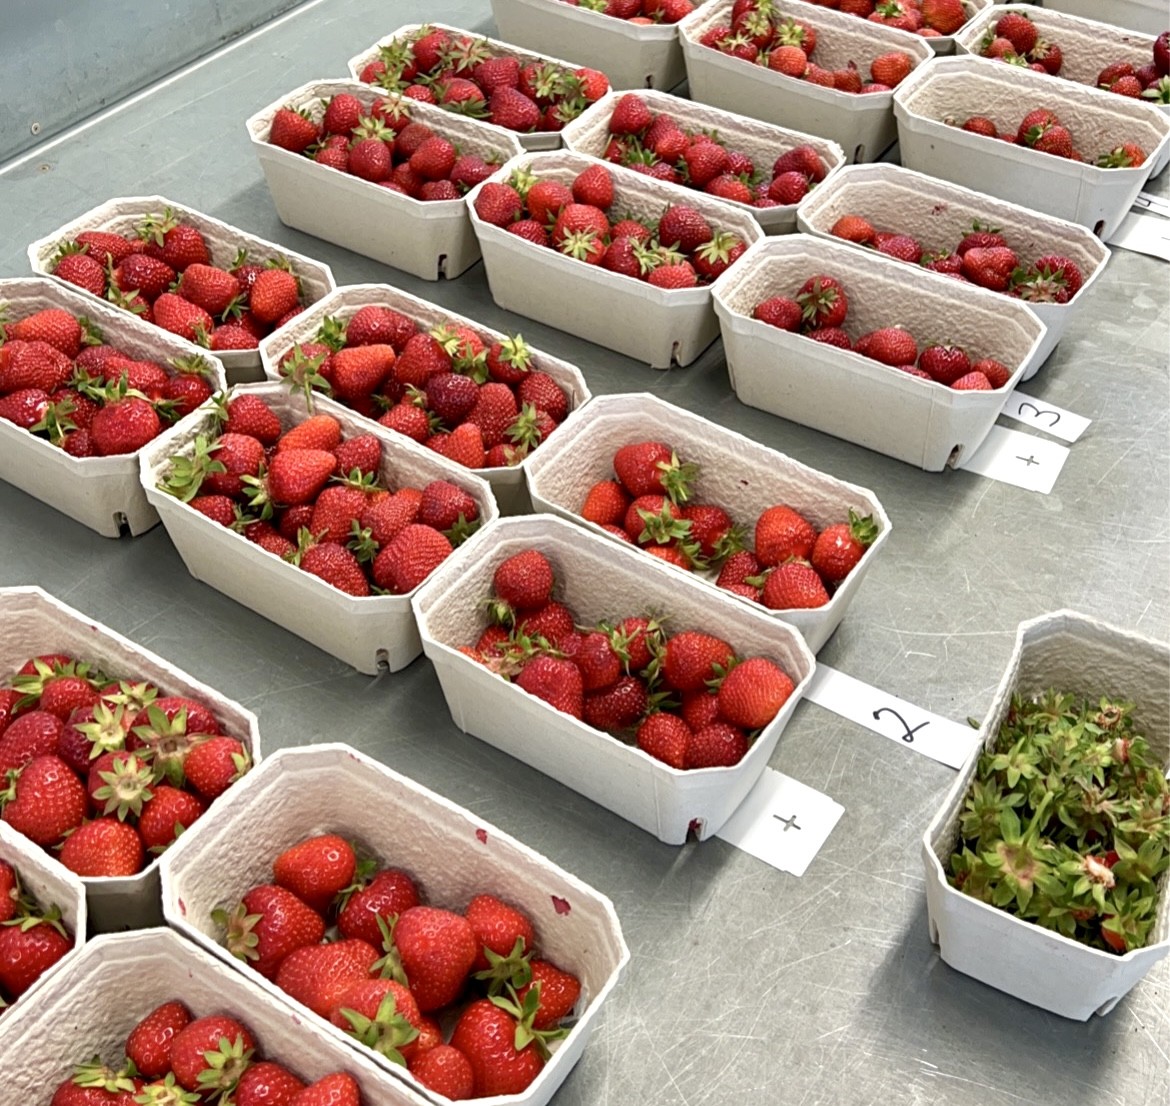 500 Gramm Schalen mit frischen Bio-Erdbeeren liegen zur Verkostung bereit